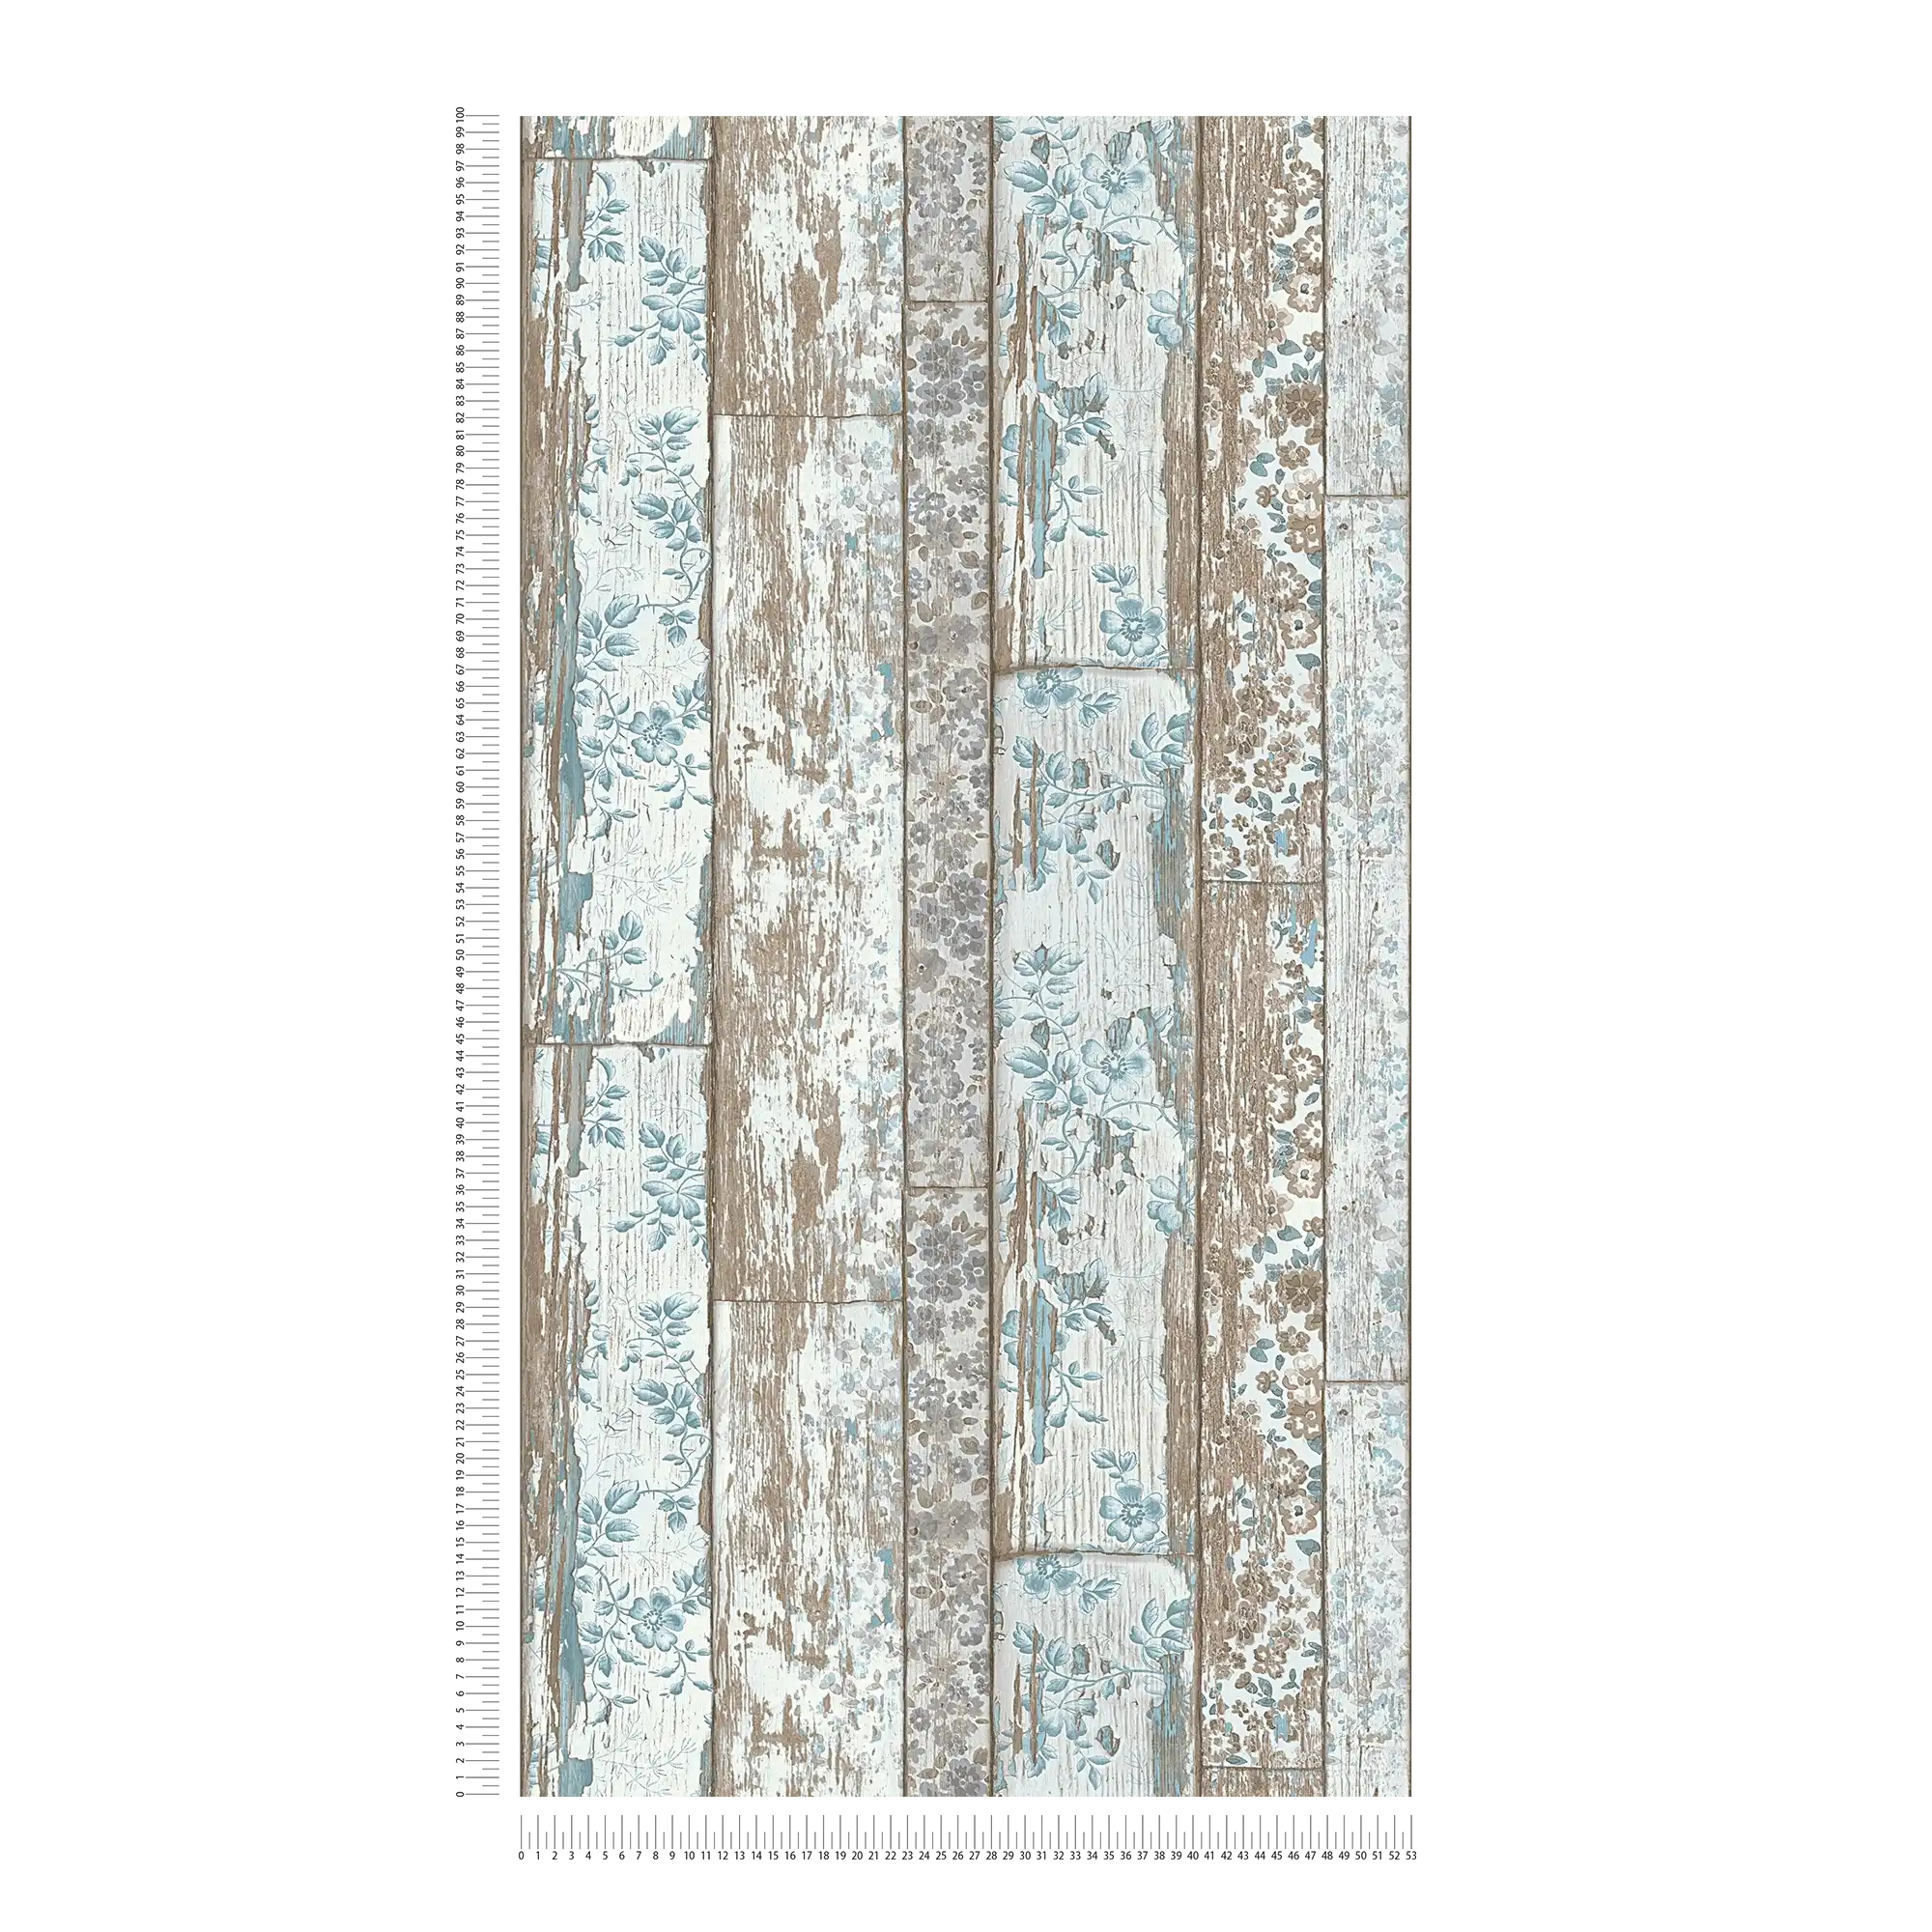             Landhaus Tapete Bretteroptik mit Vintage Blumenprint – Blau, Braun, Grau
        